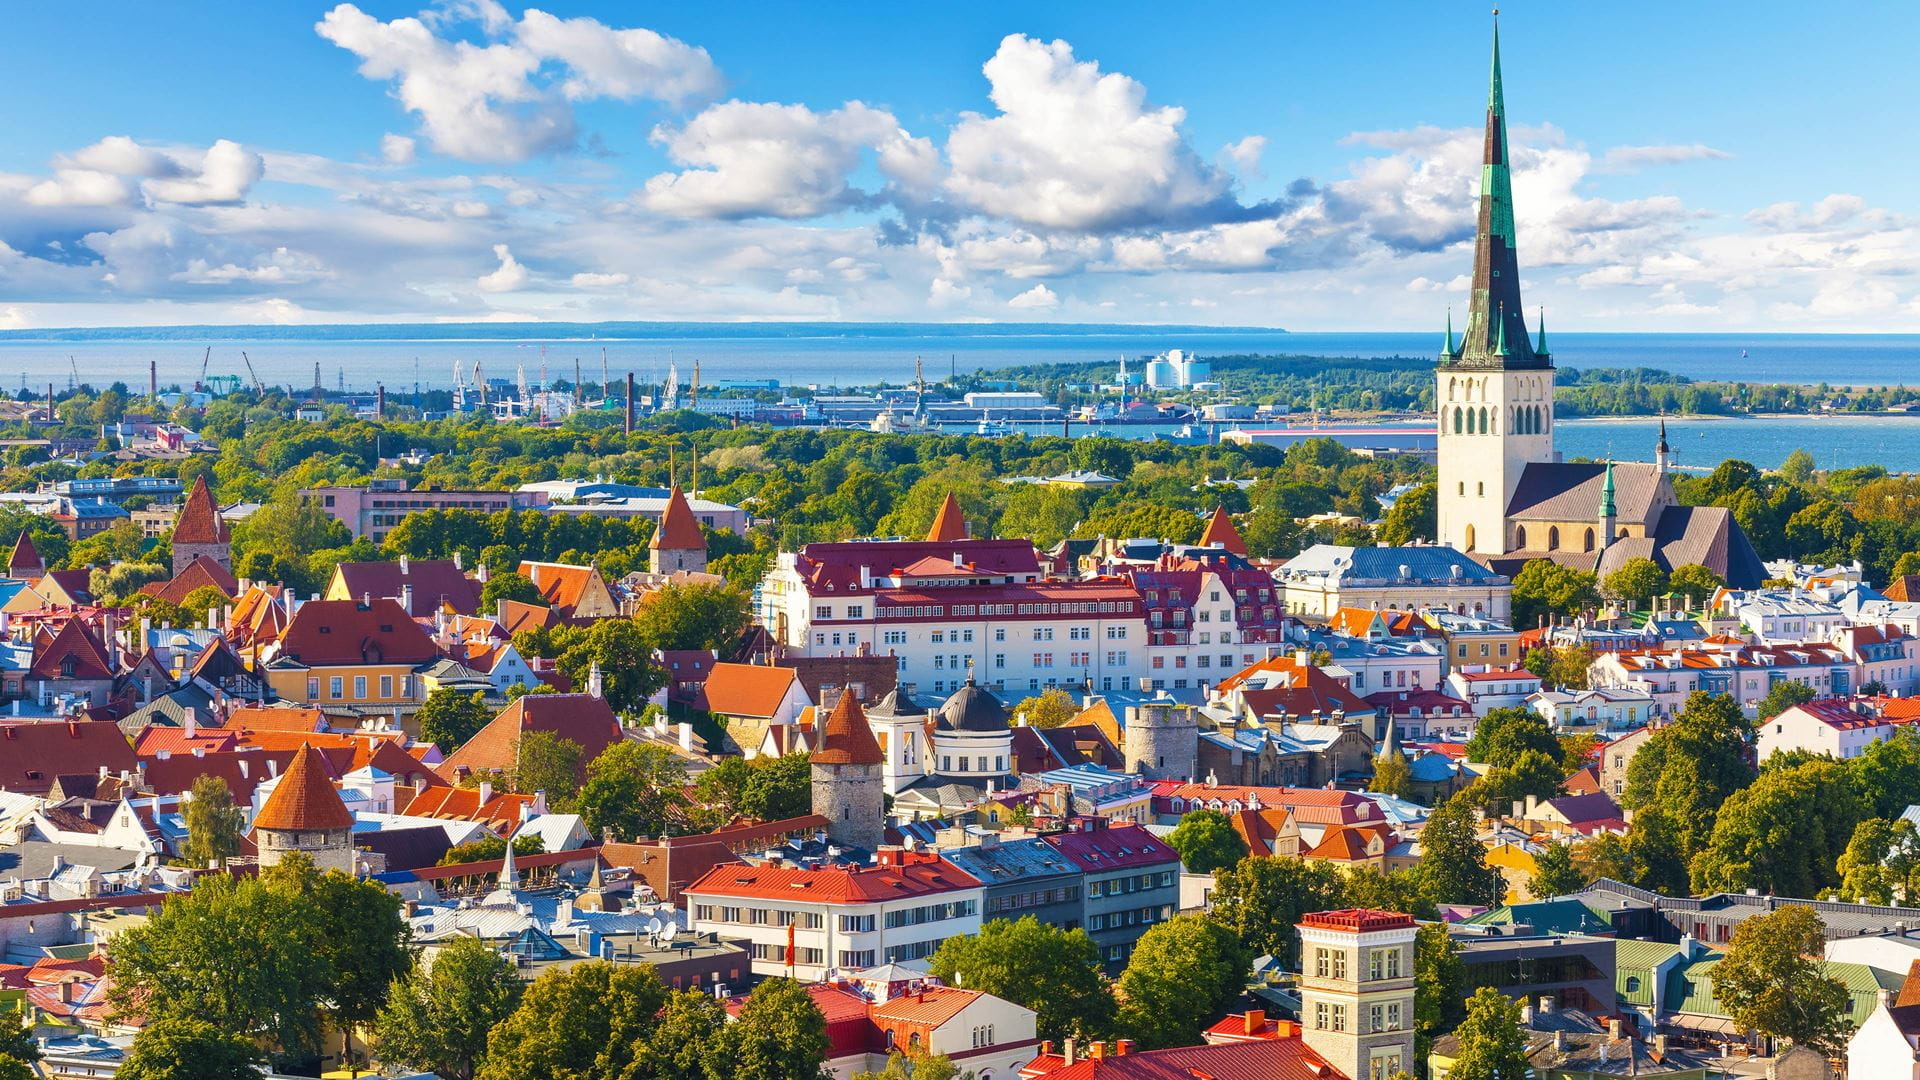 Юрисдикция Эстония: особенности и преимущества регистрации бизнеса для иностранцев